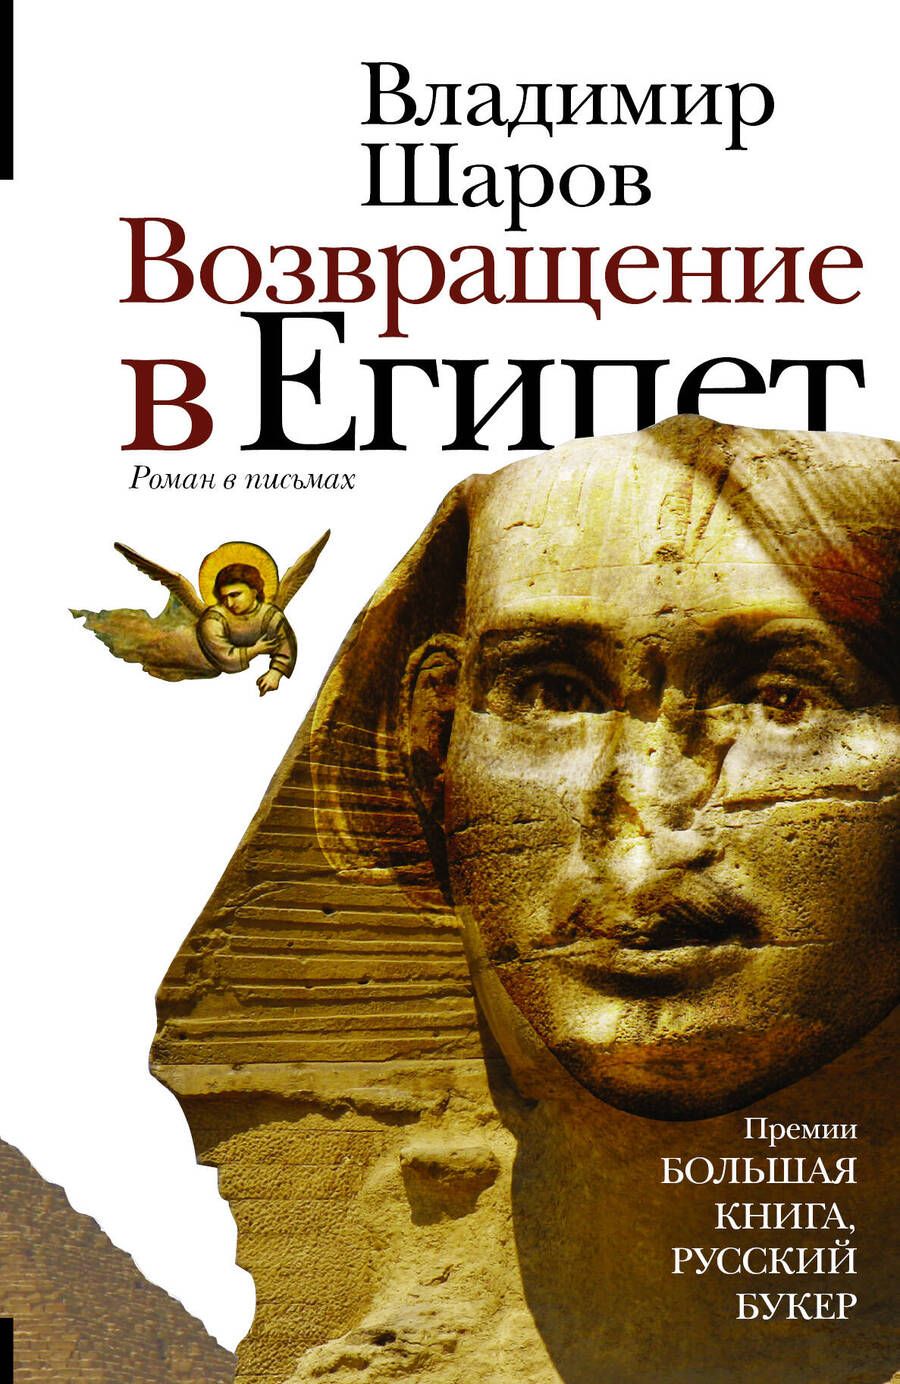 Обложка книги "Владимир Шаров: Возвращение в Египет"